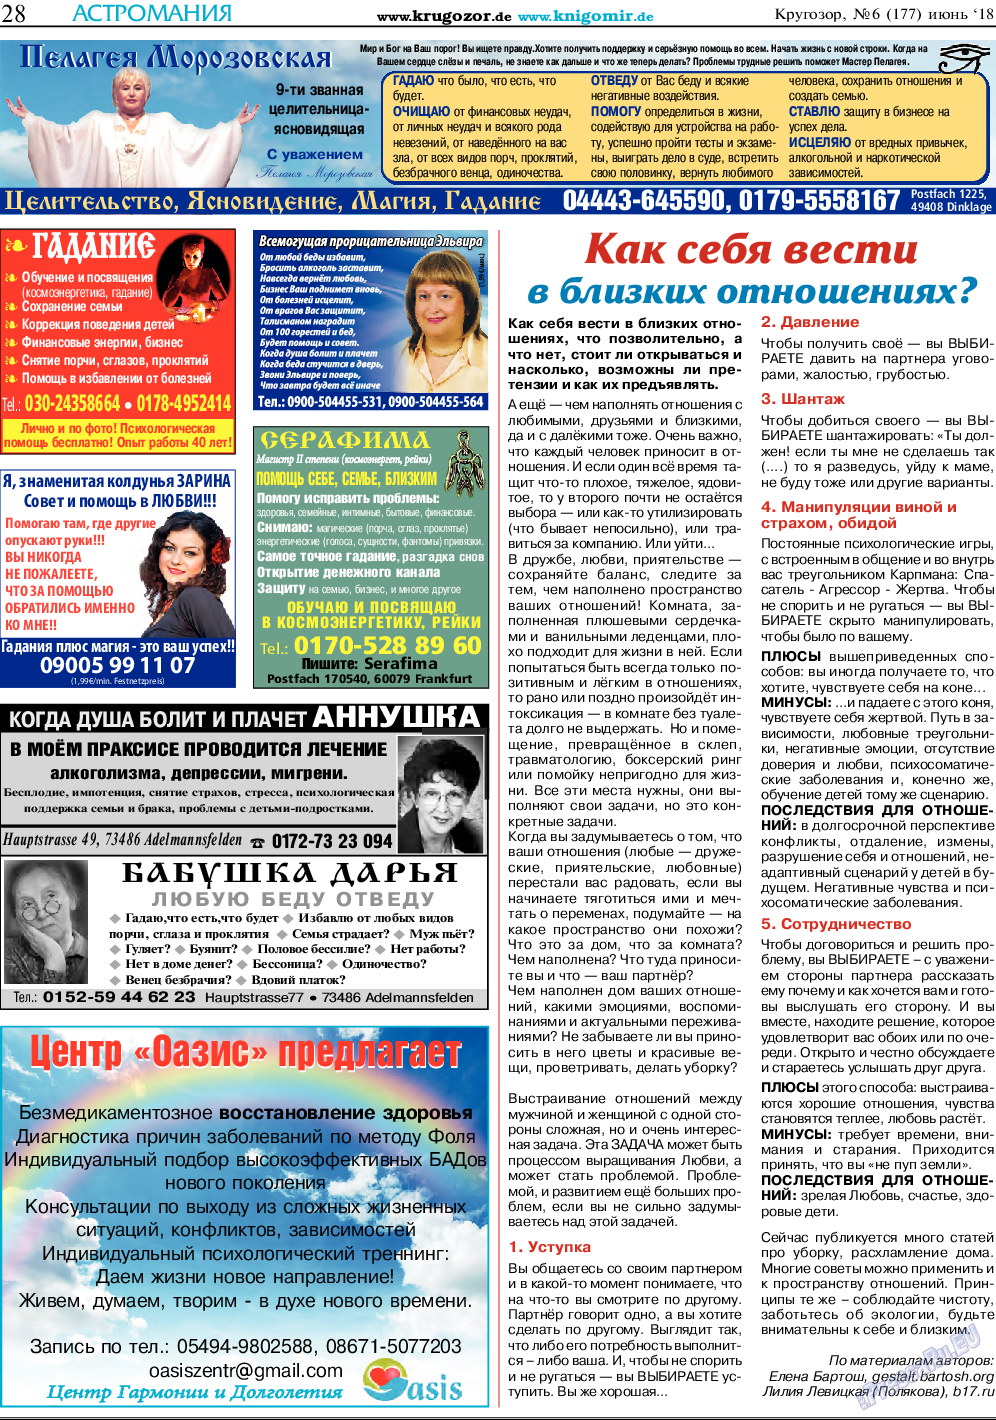 Кругозор, газета. 2018 №6 стр.28